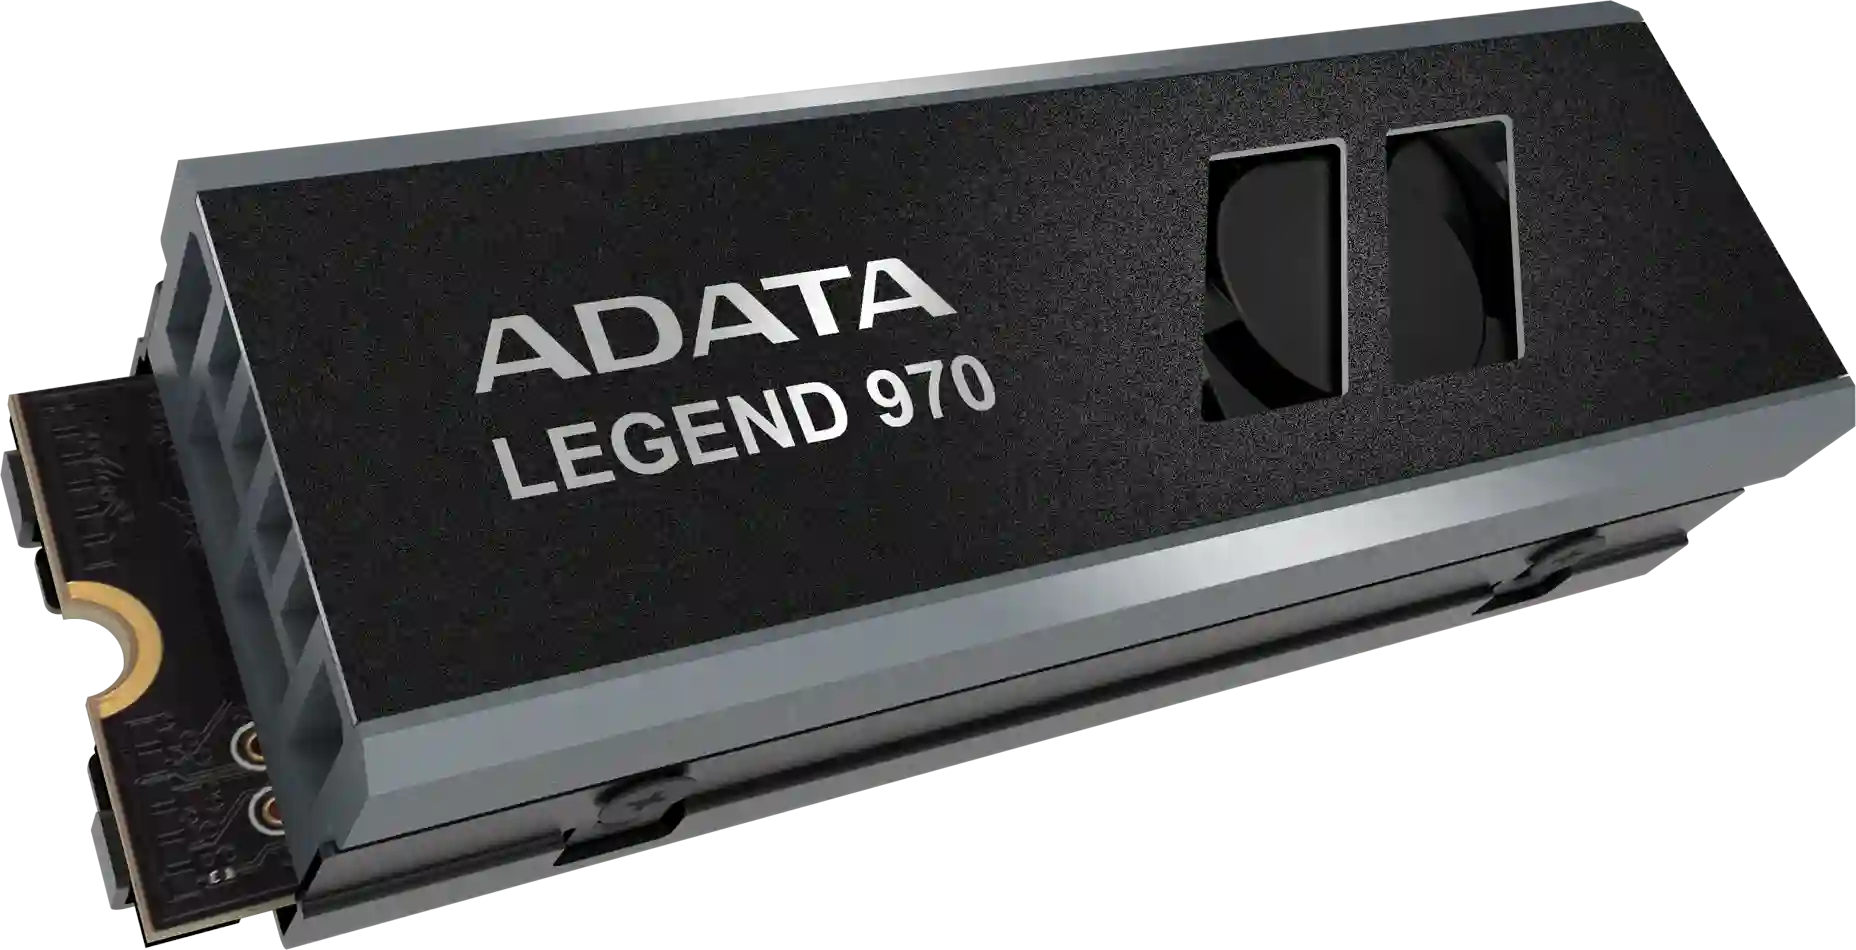 Внутренний SSD диск ADATA Legend 970, 2000GB, M.2 (SLEG-970-2000GCI)